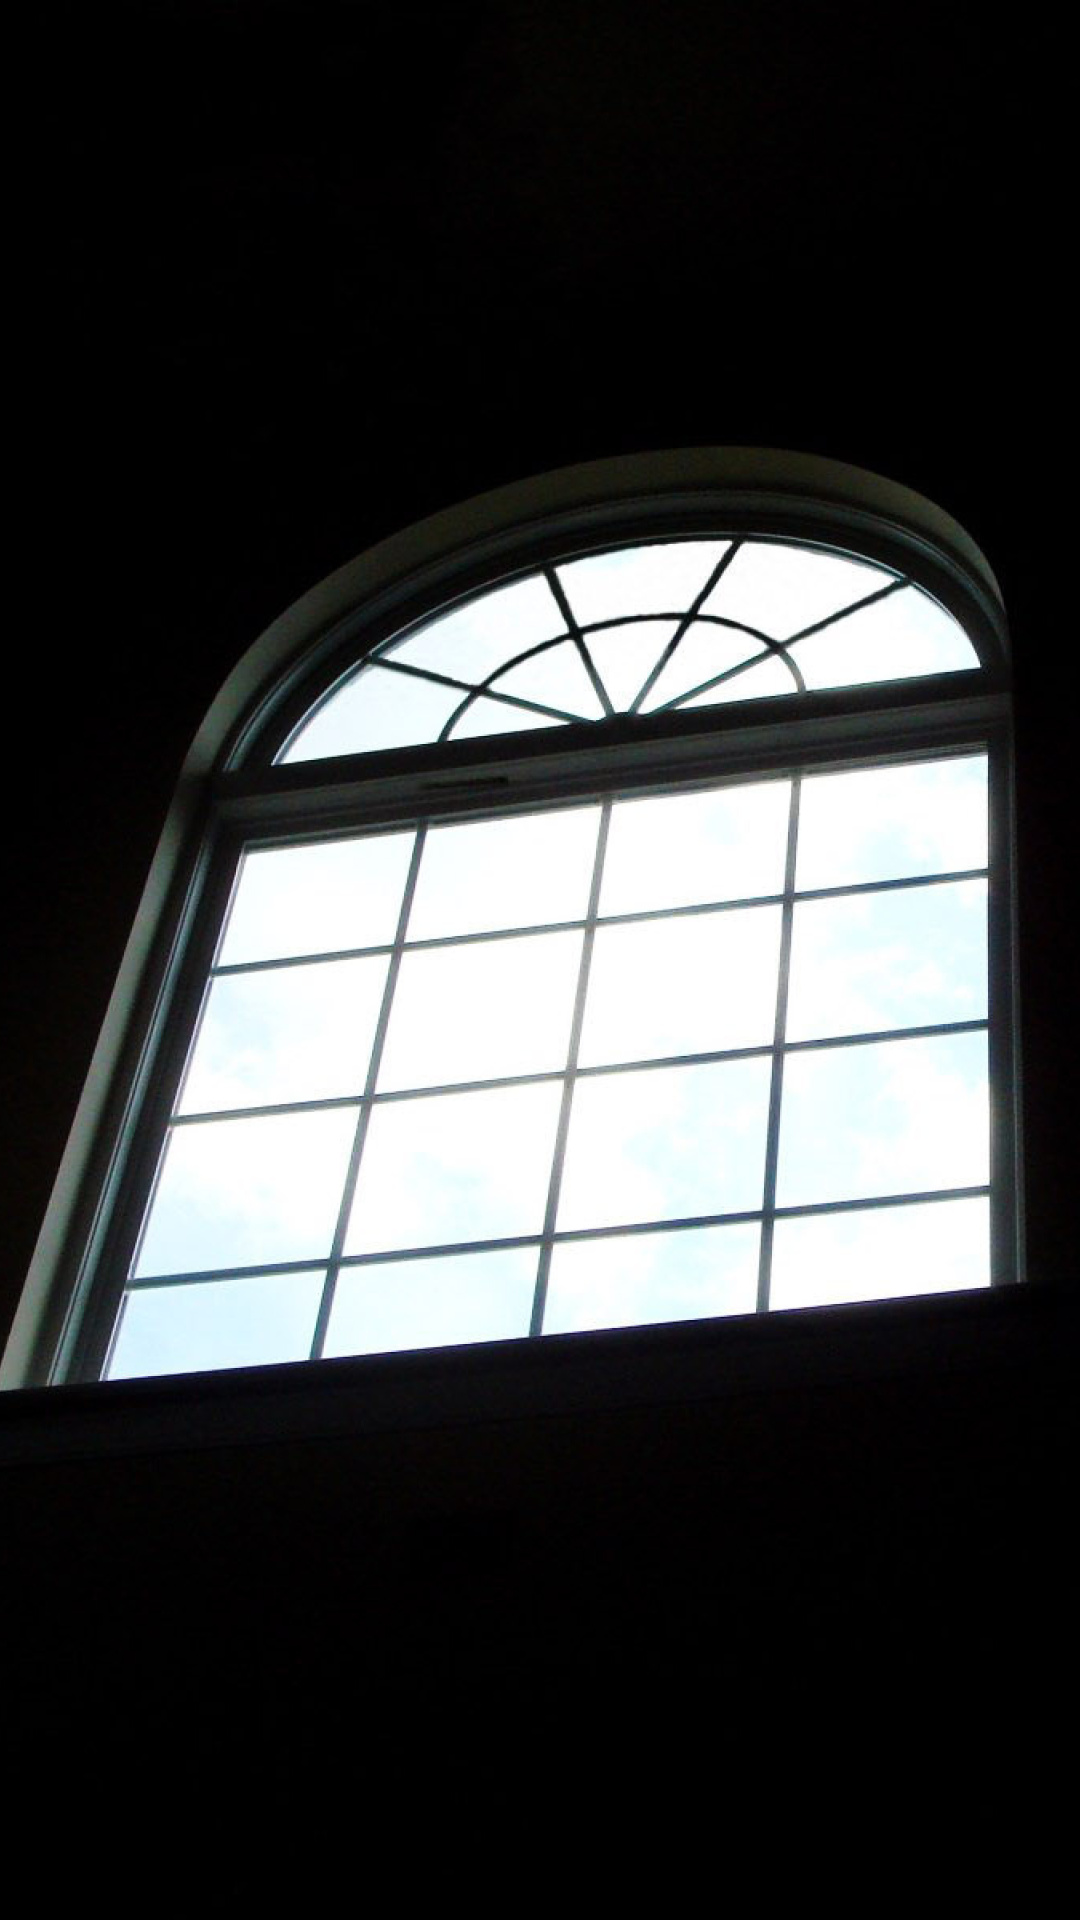 Minimalistic Window wallpaper 1080x1920